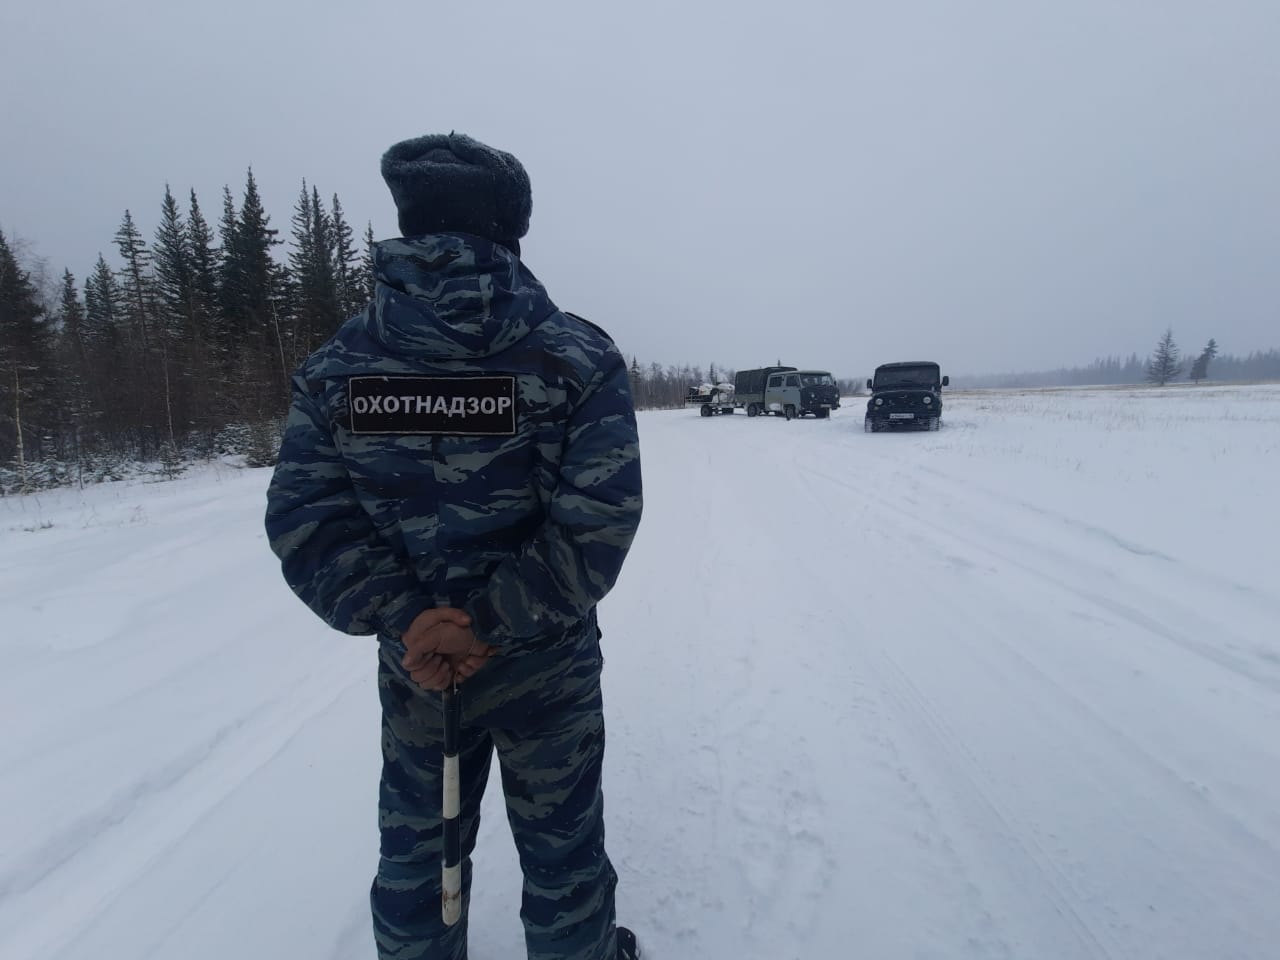 Дело о незаконной добыче оленей сотрудниками правоохранительных органов в Якутии передали в полицию и СК